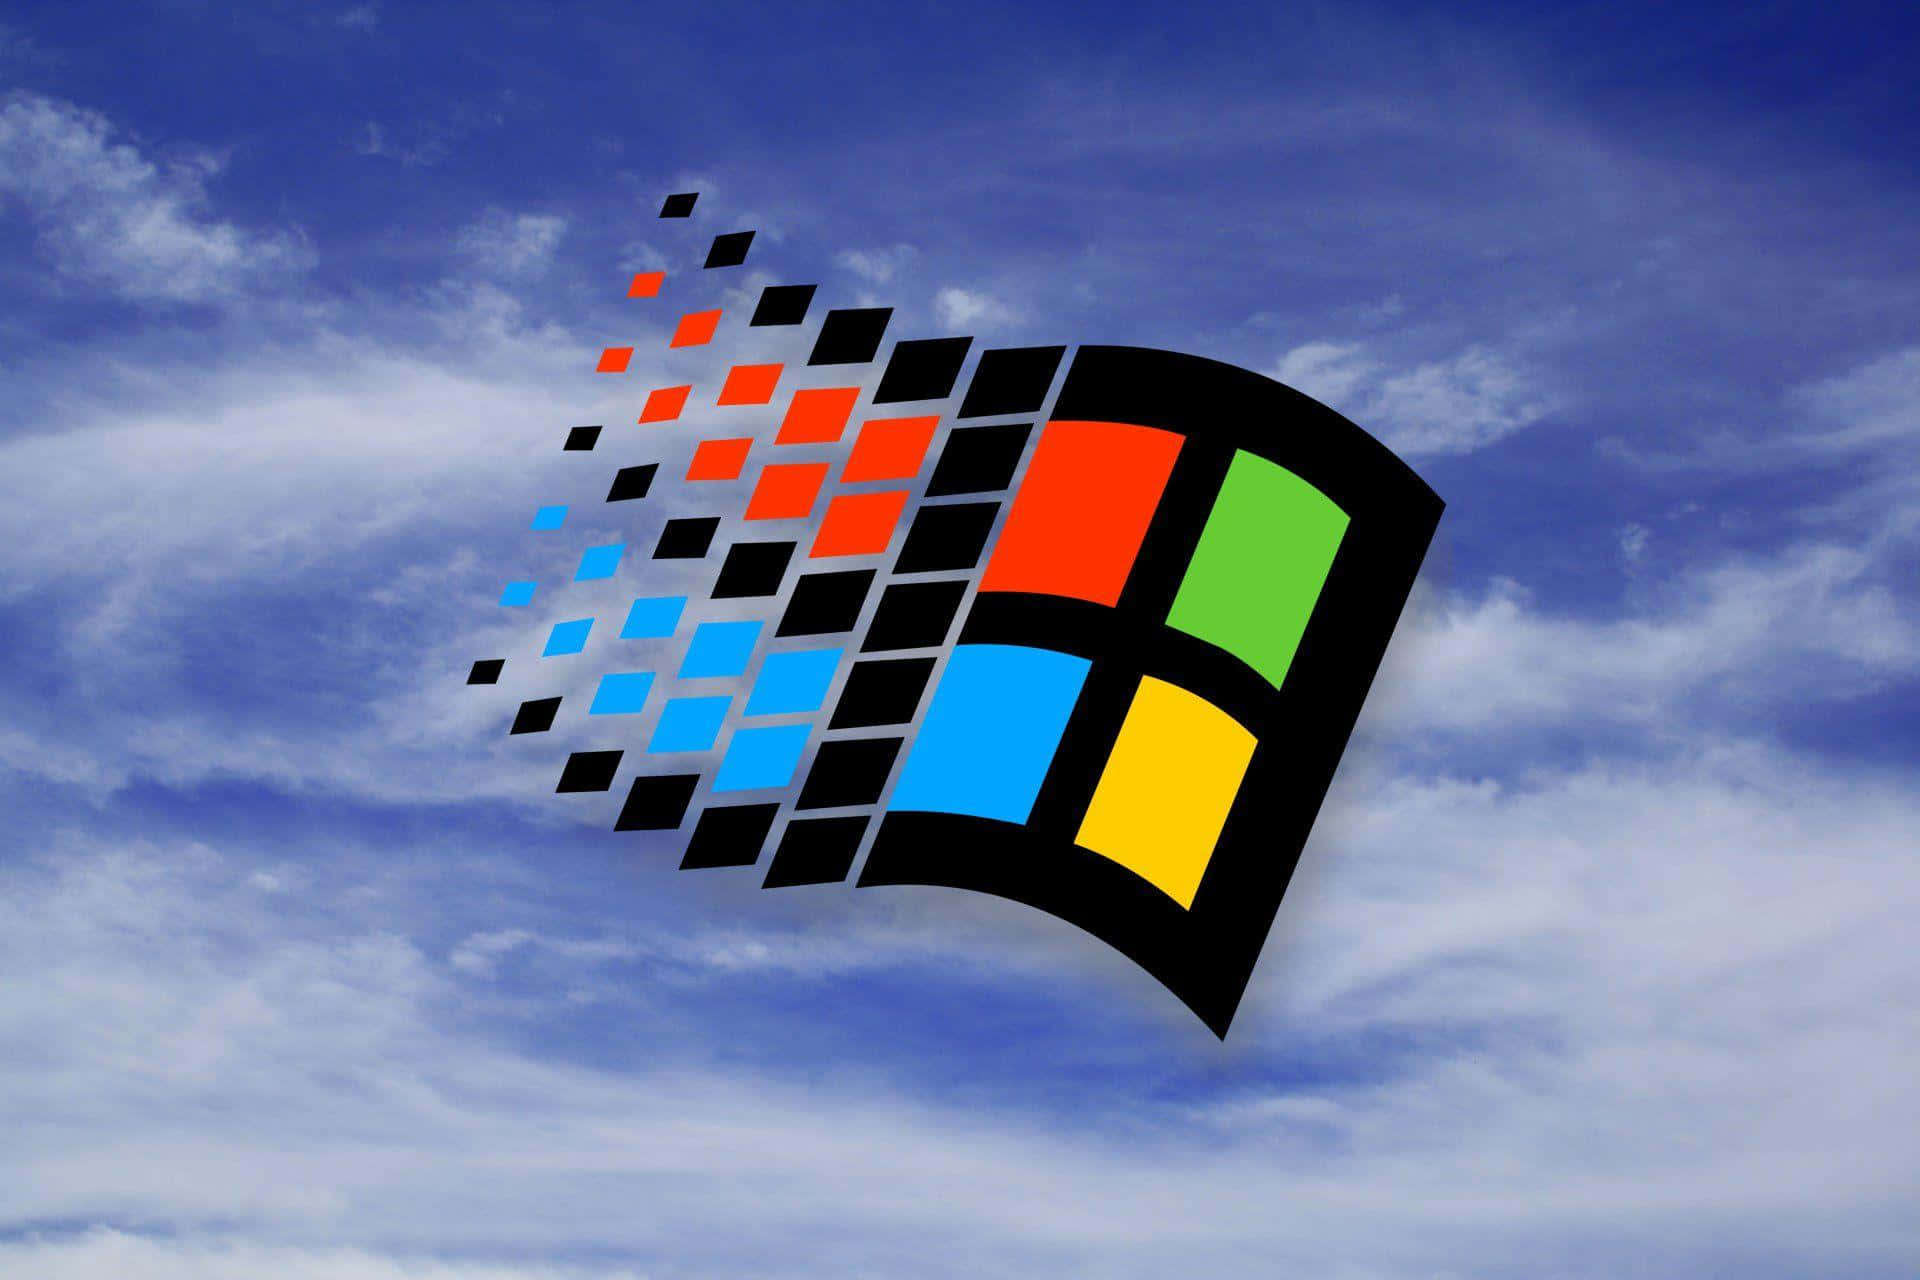 Nyd funktionerne i Windows 95